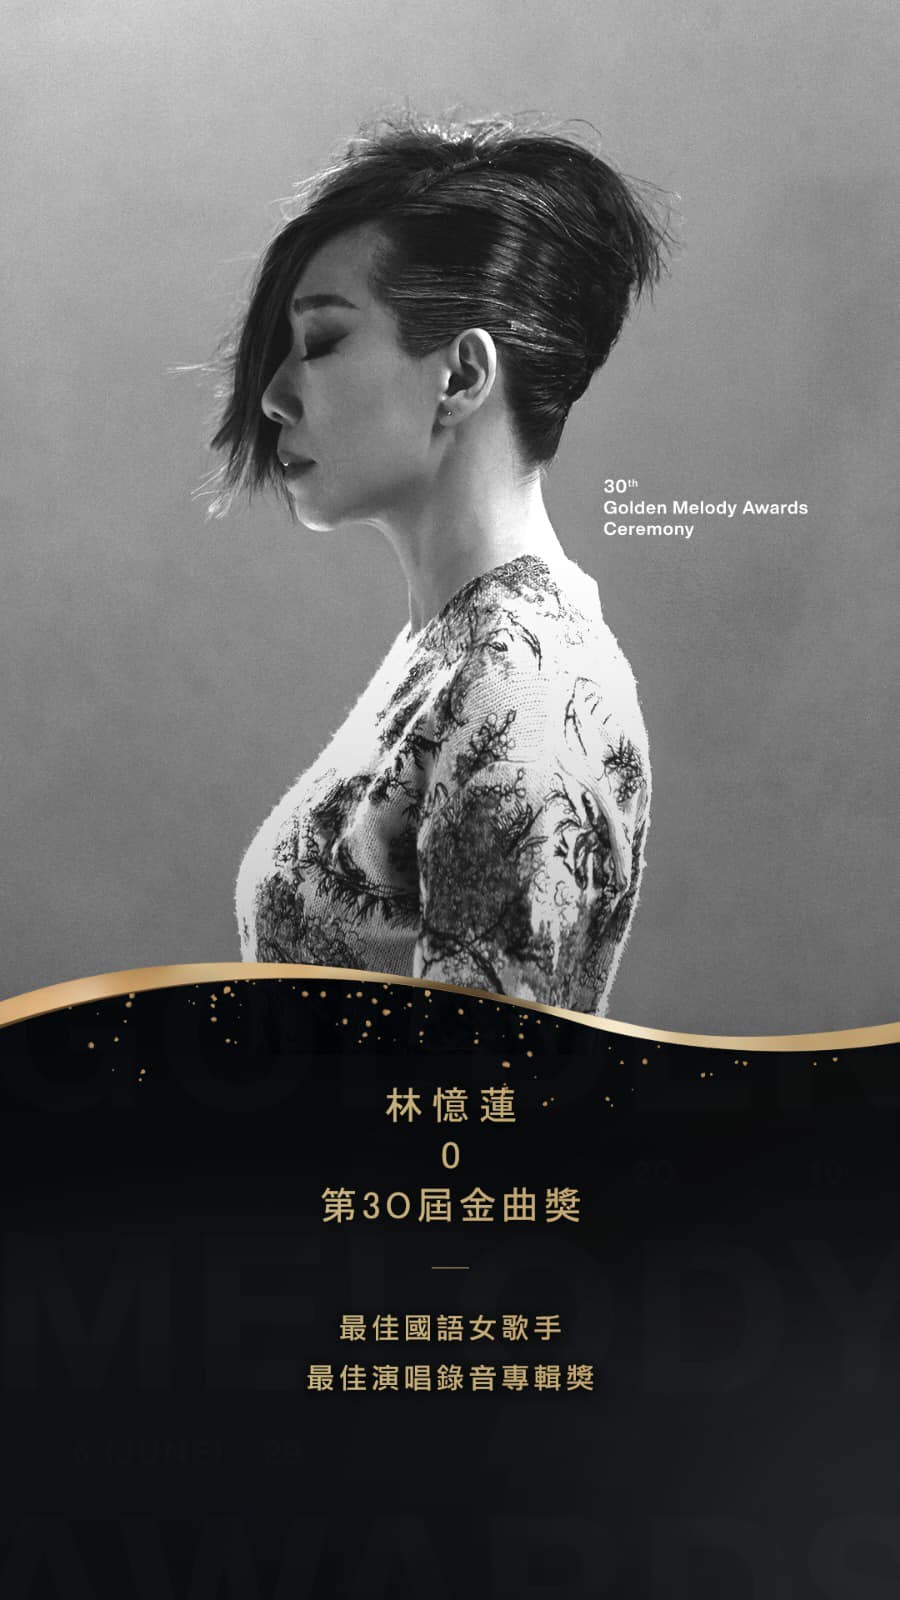 林憶蓮翌年獲得台灣《第30屆金曲獎》之「最佳國語女歌手獎」及「最佳演唱錄音專輯獎」。